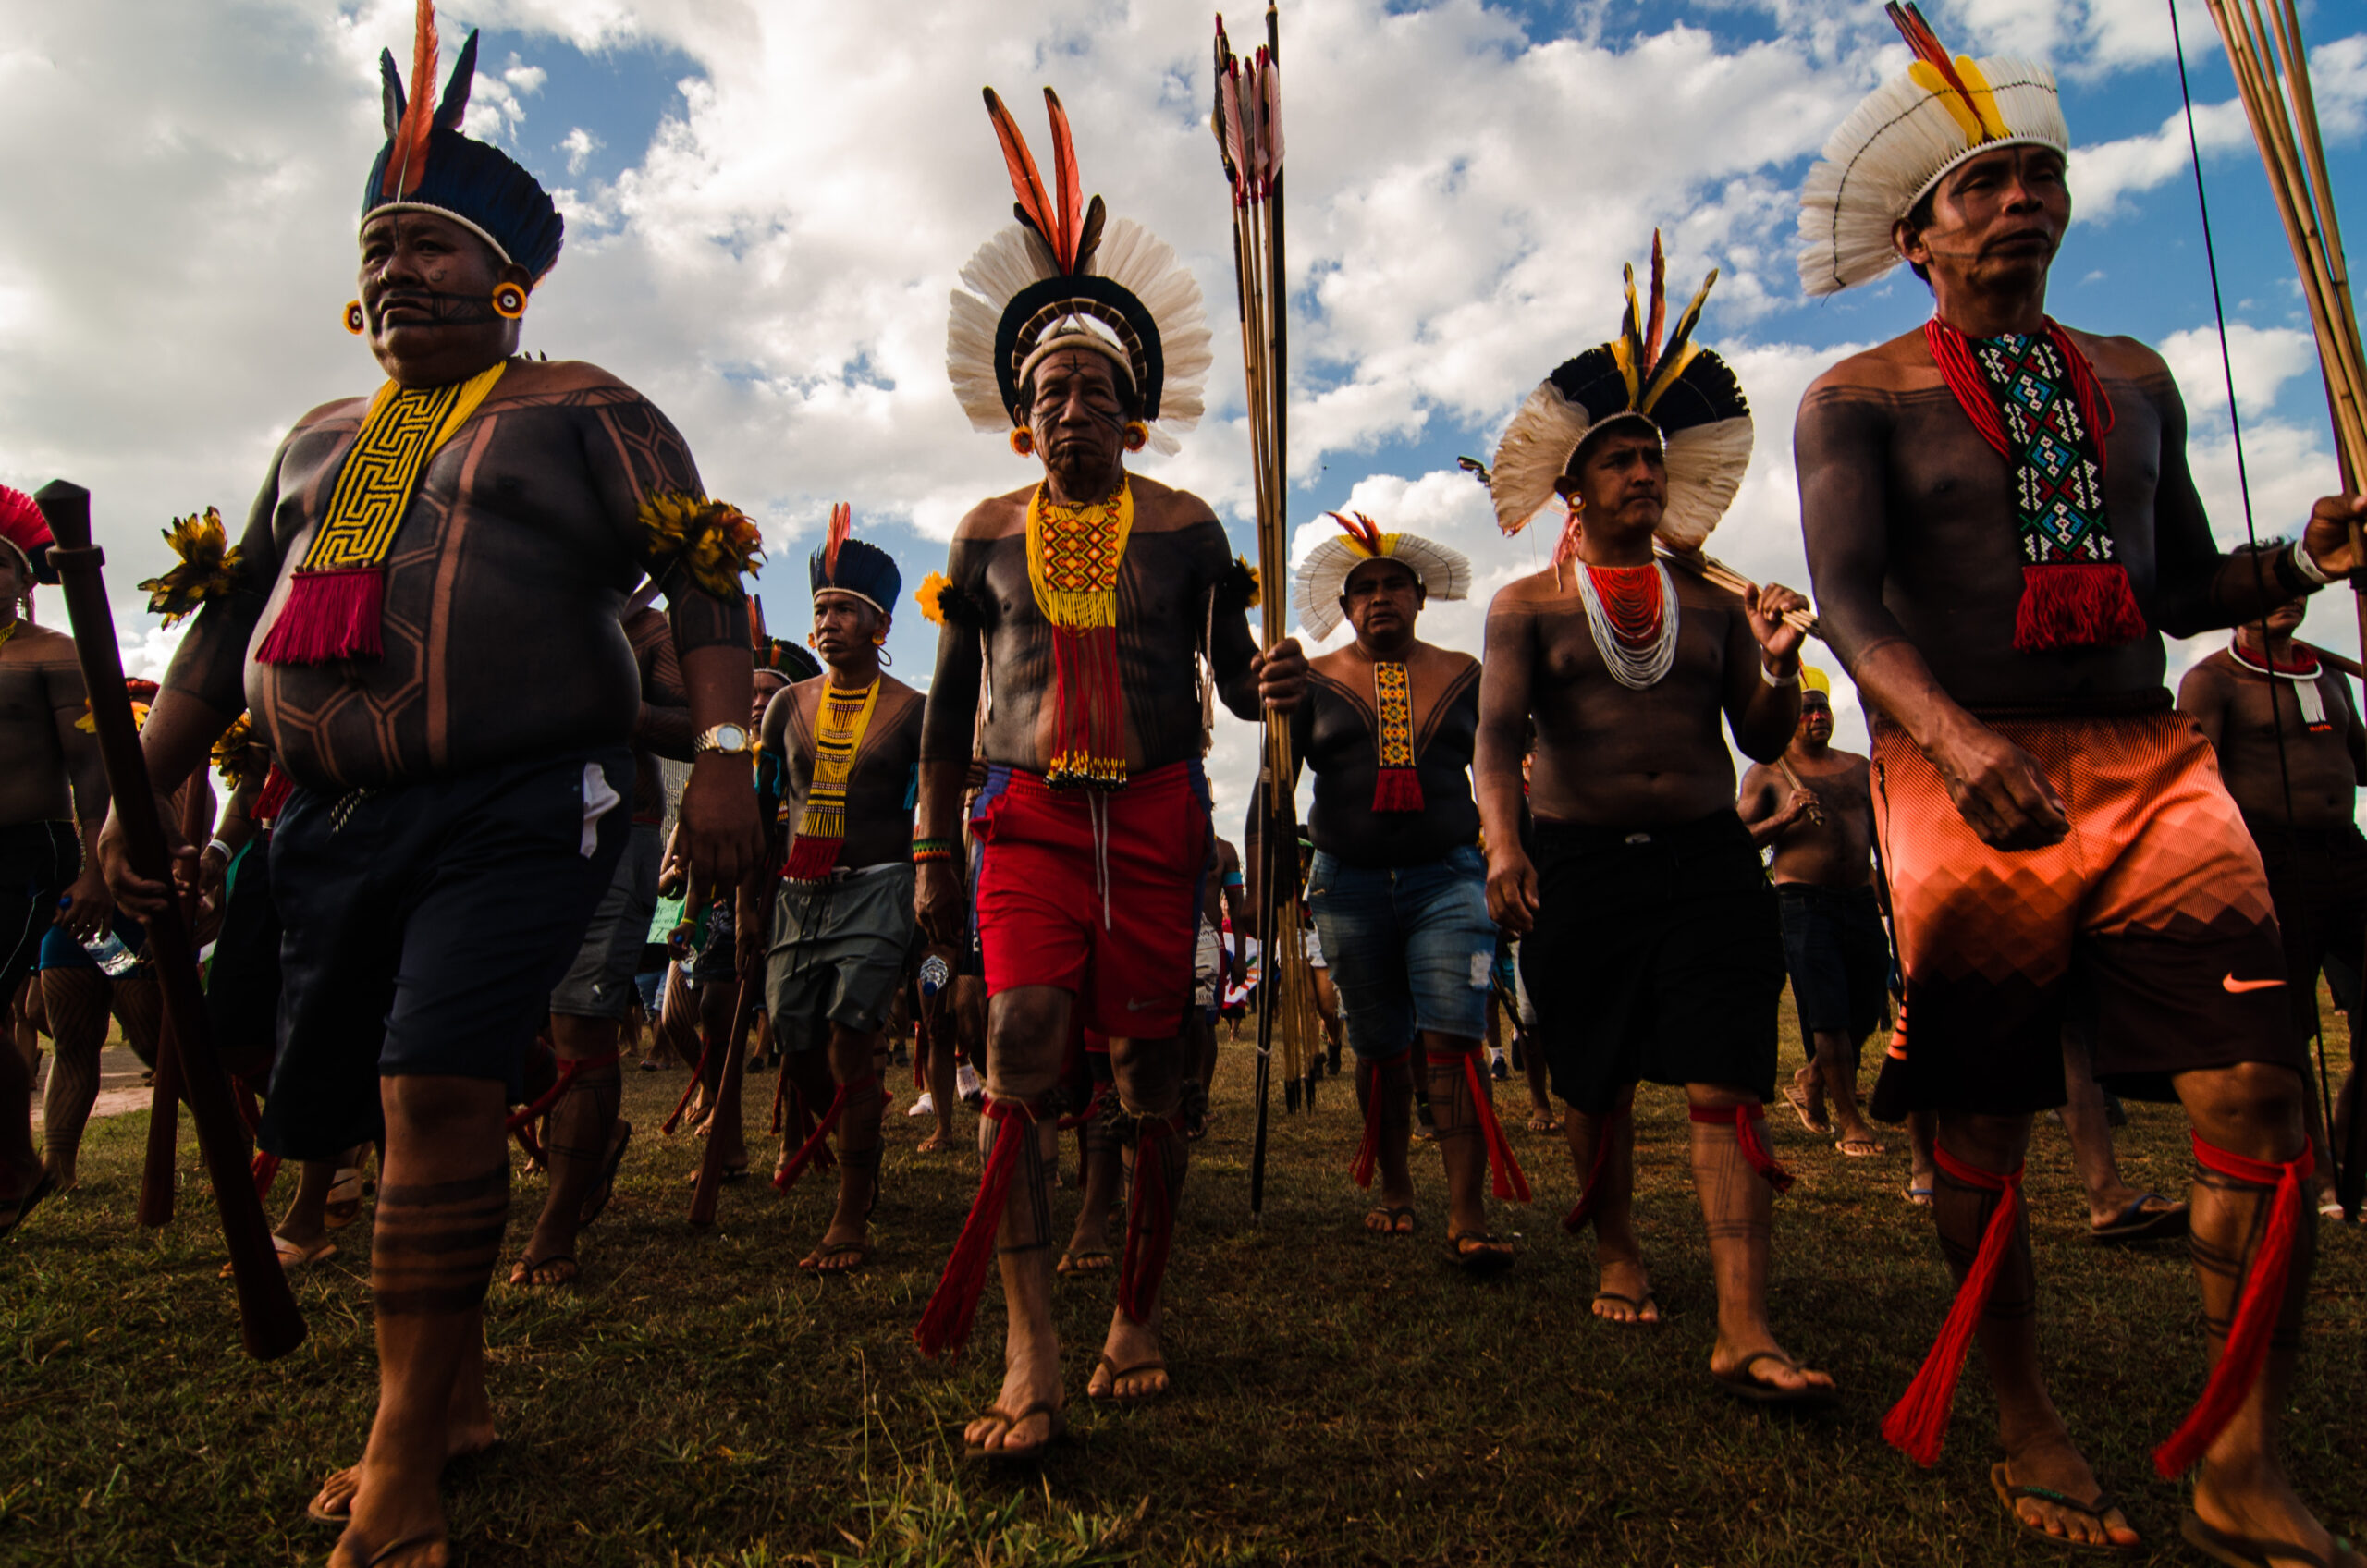 Manifestação histórica: imagens registram resistência indígena contra Marco Temporal, em julgamento pelo STF